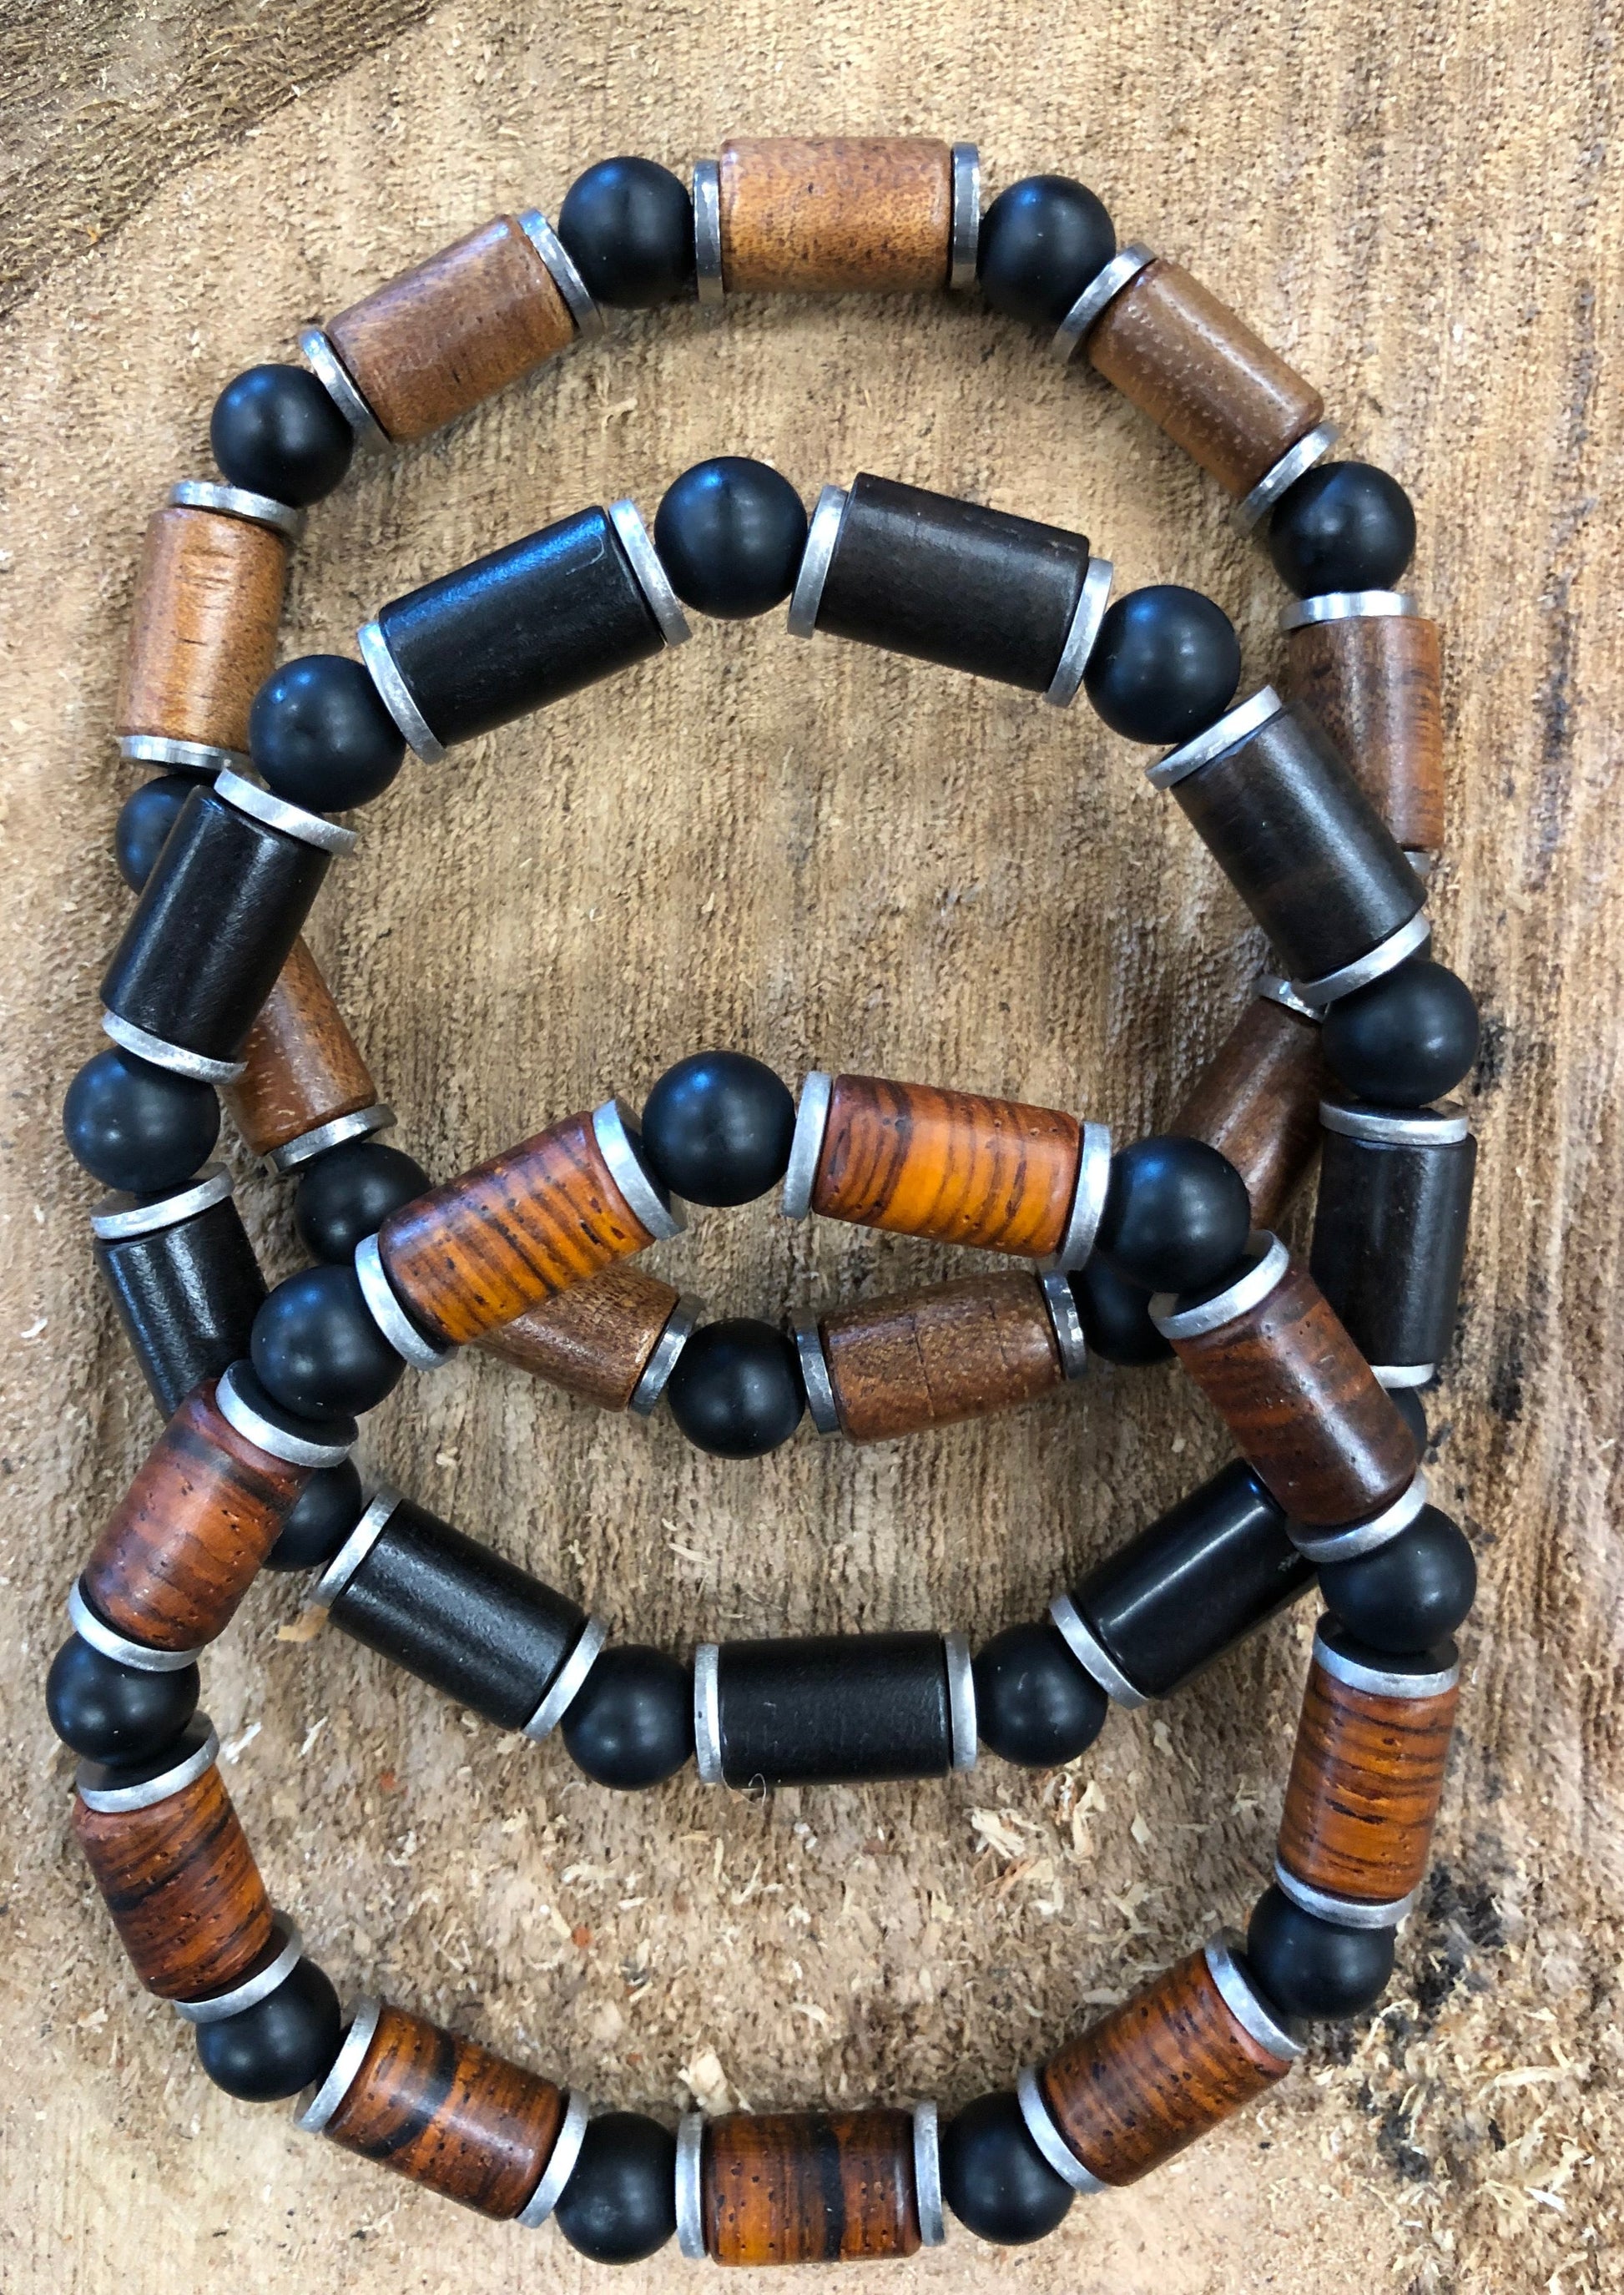 Handmade Wooden Bracelet - Beaded by Davin & Kesler